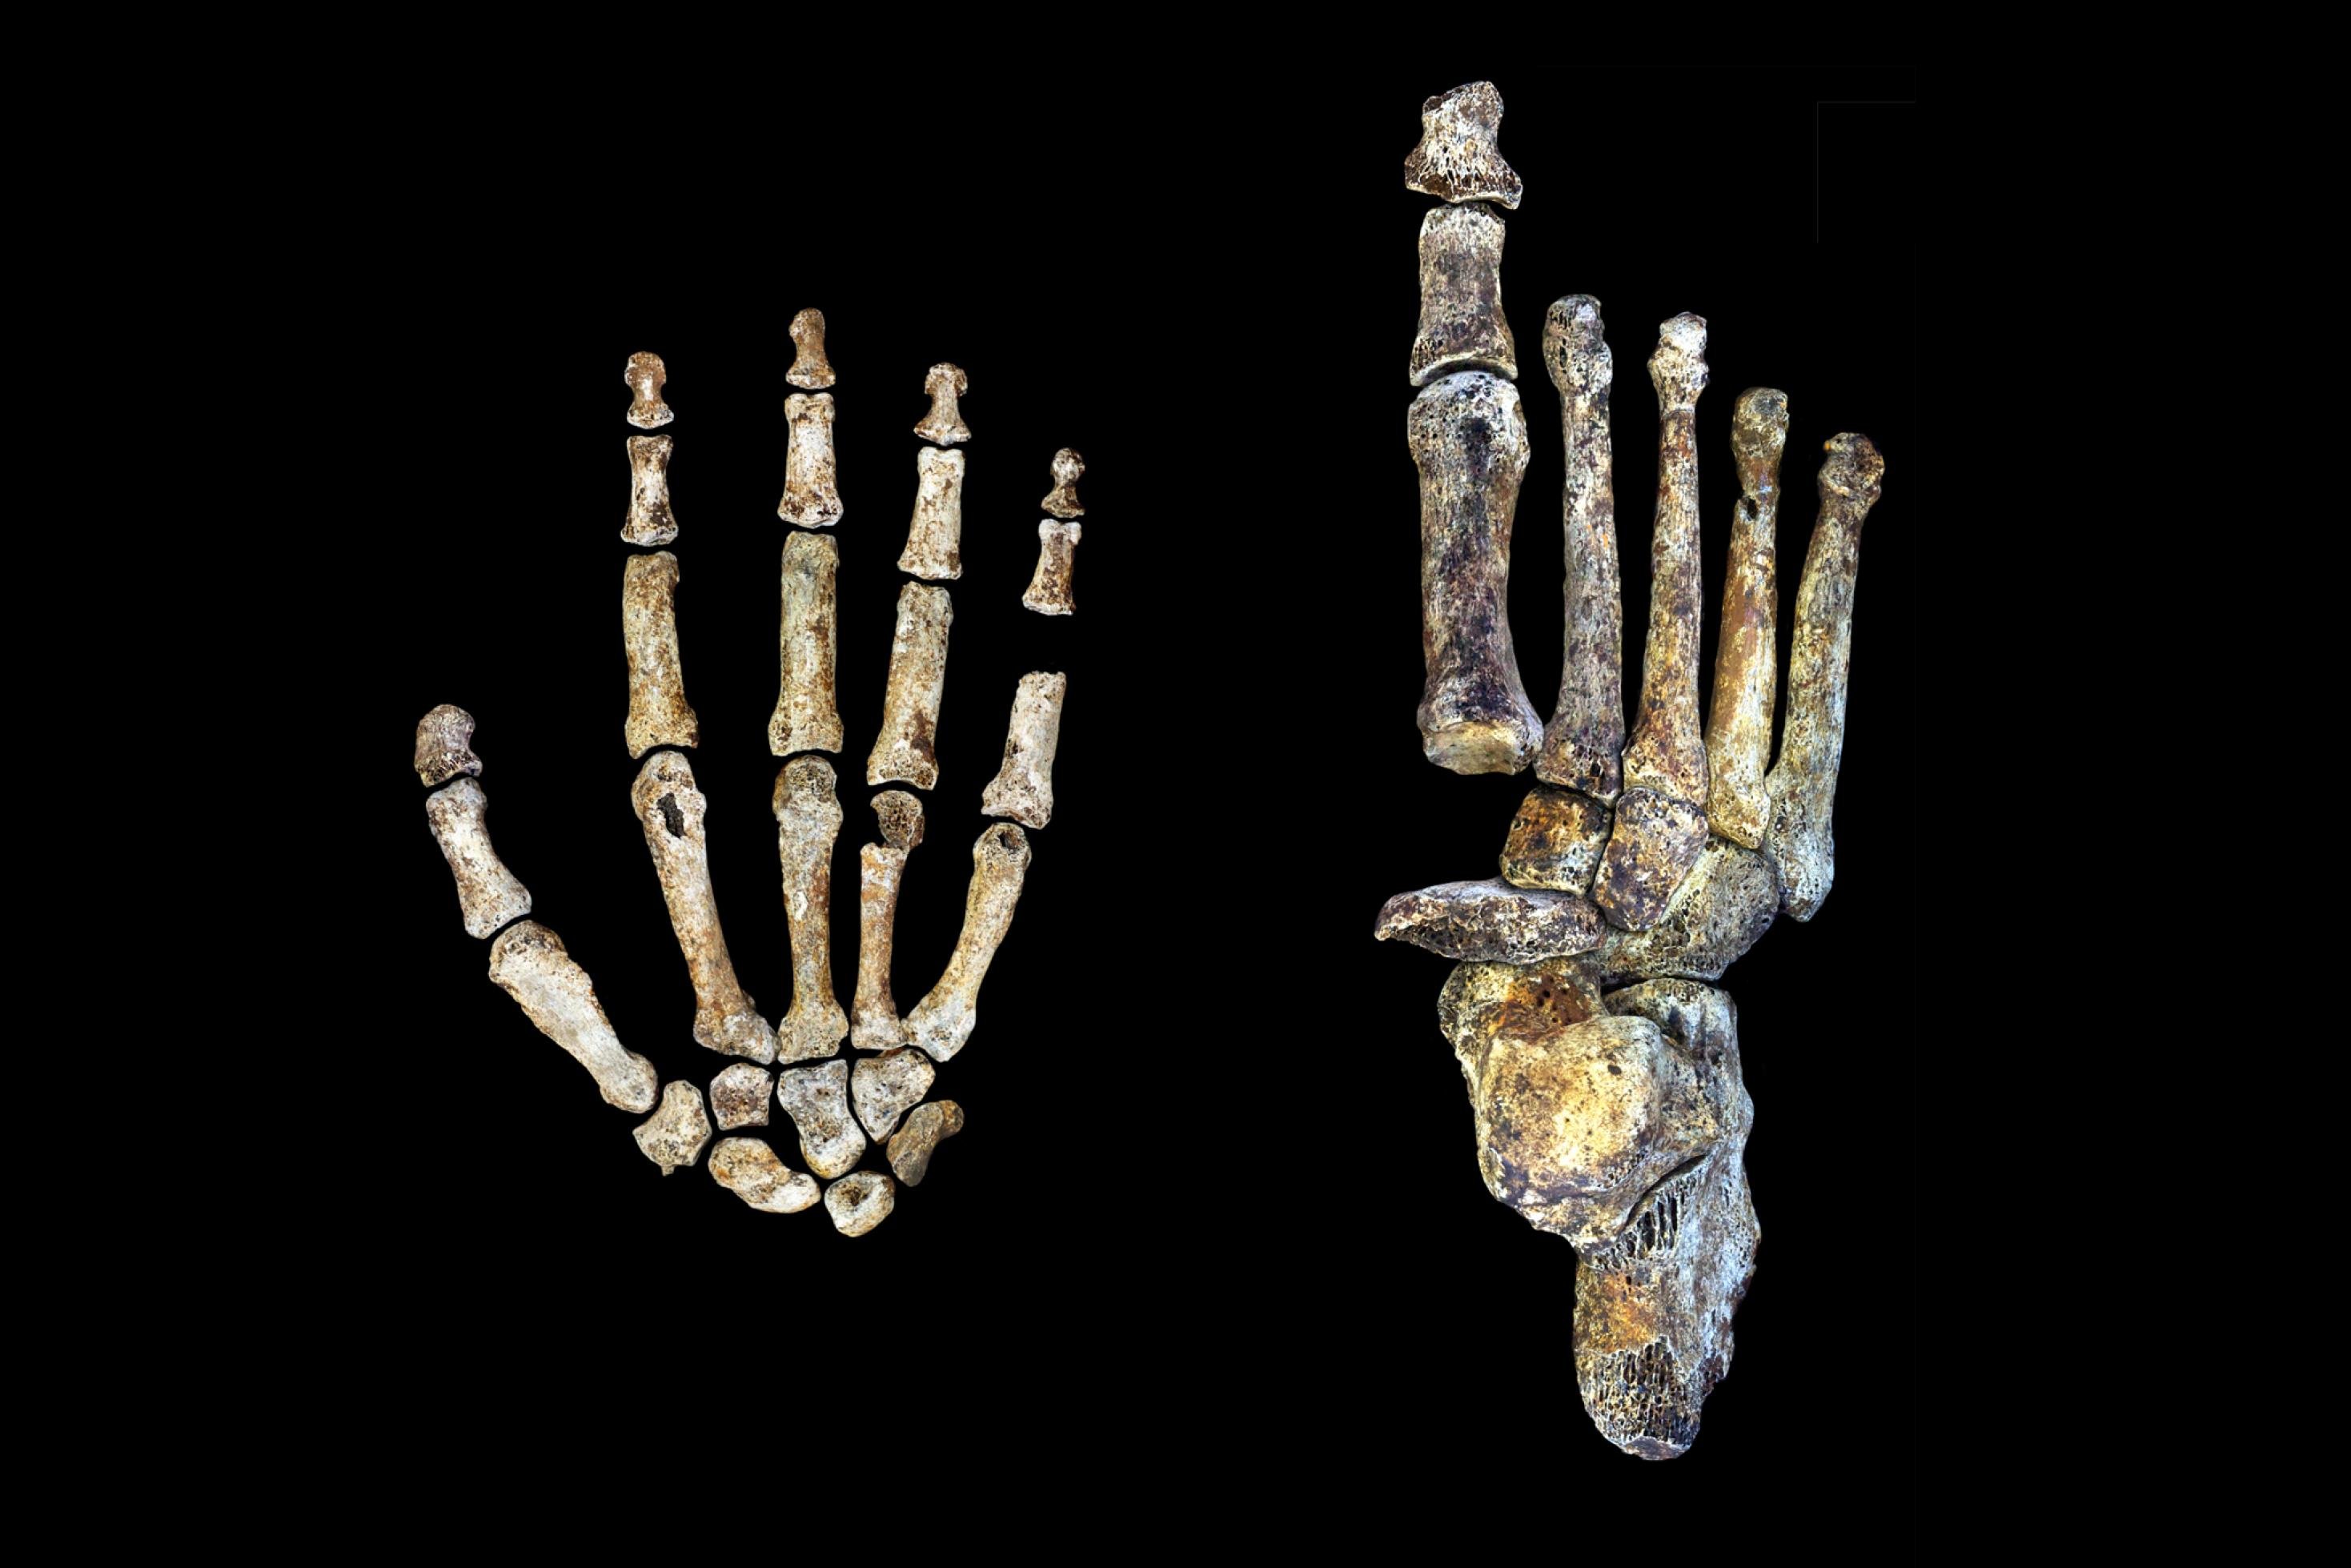 Auf der linken Seite des Fotos sind die Knochen einer Hand von Homo naledi zu sehen, auf der rechten die Knochen eines Fußes. Die Fossilien zeigen, dass dieses Wesen einerseits gut klettern konnte, aber auch anatomische Merkmale hatte, die an die Anatomie des modernen Menschen erinnern. Homo naledi wirkt wie ein seltsames Mischwesen.